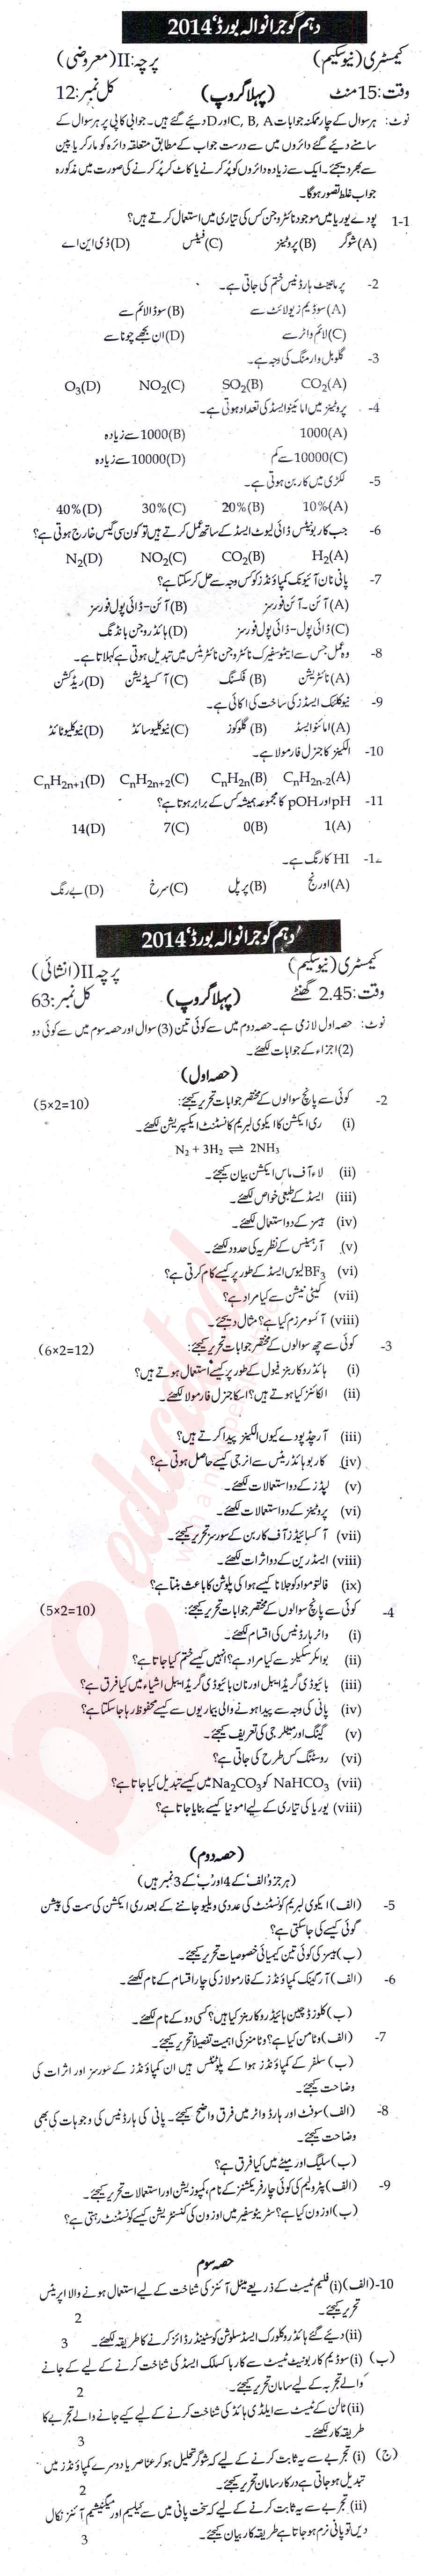 Chemistry 10th Urdu Medium Past Paper Group 1 BISE Gujranwala 2014